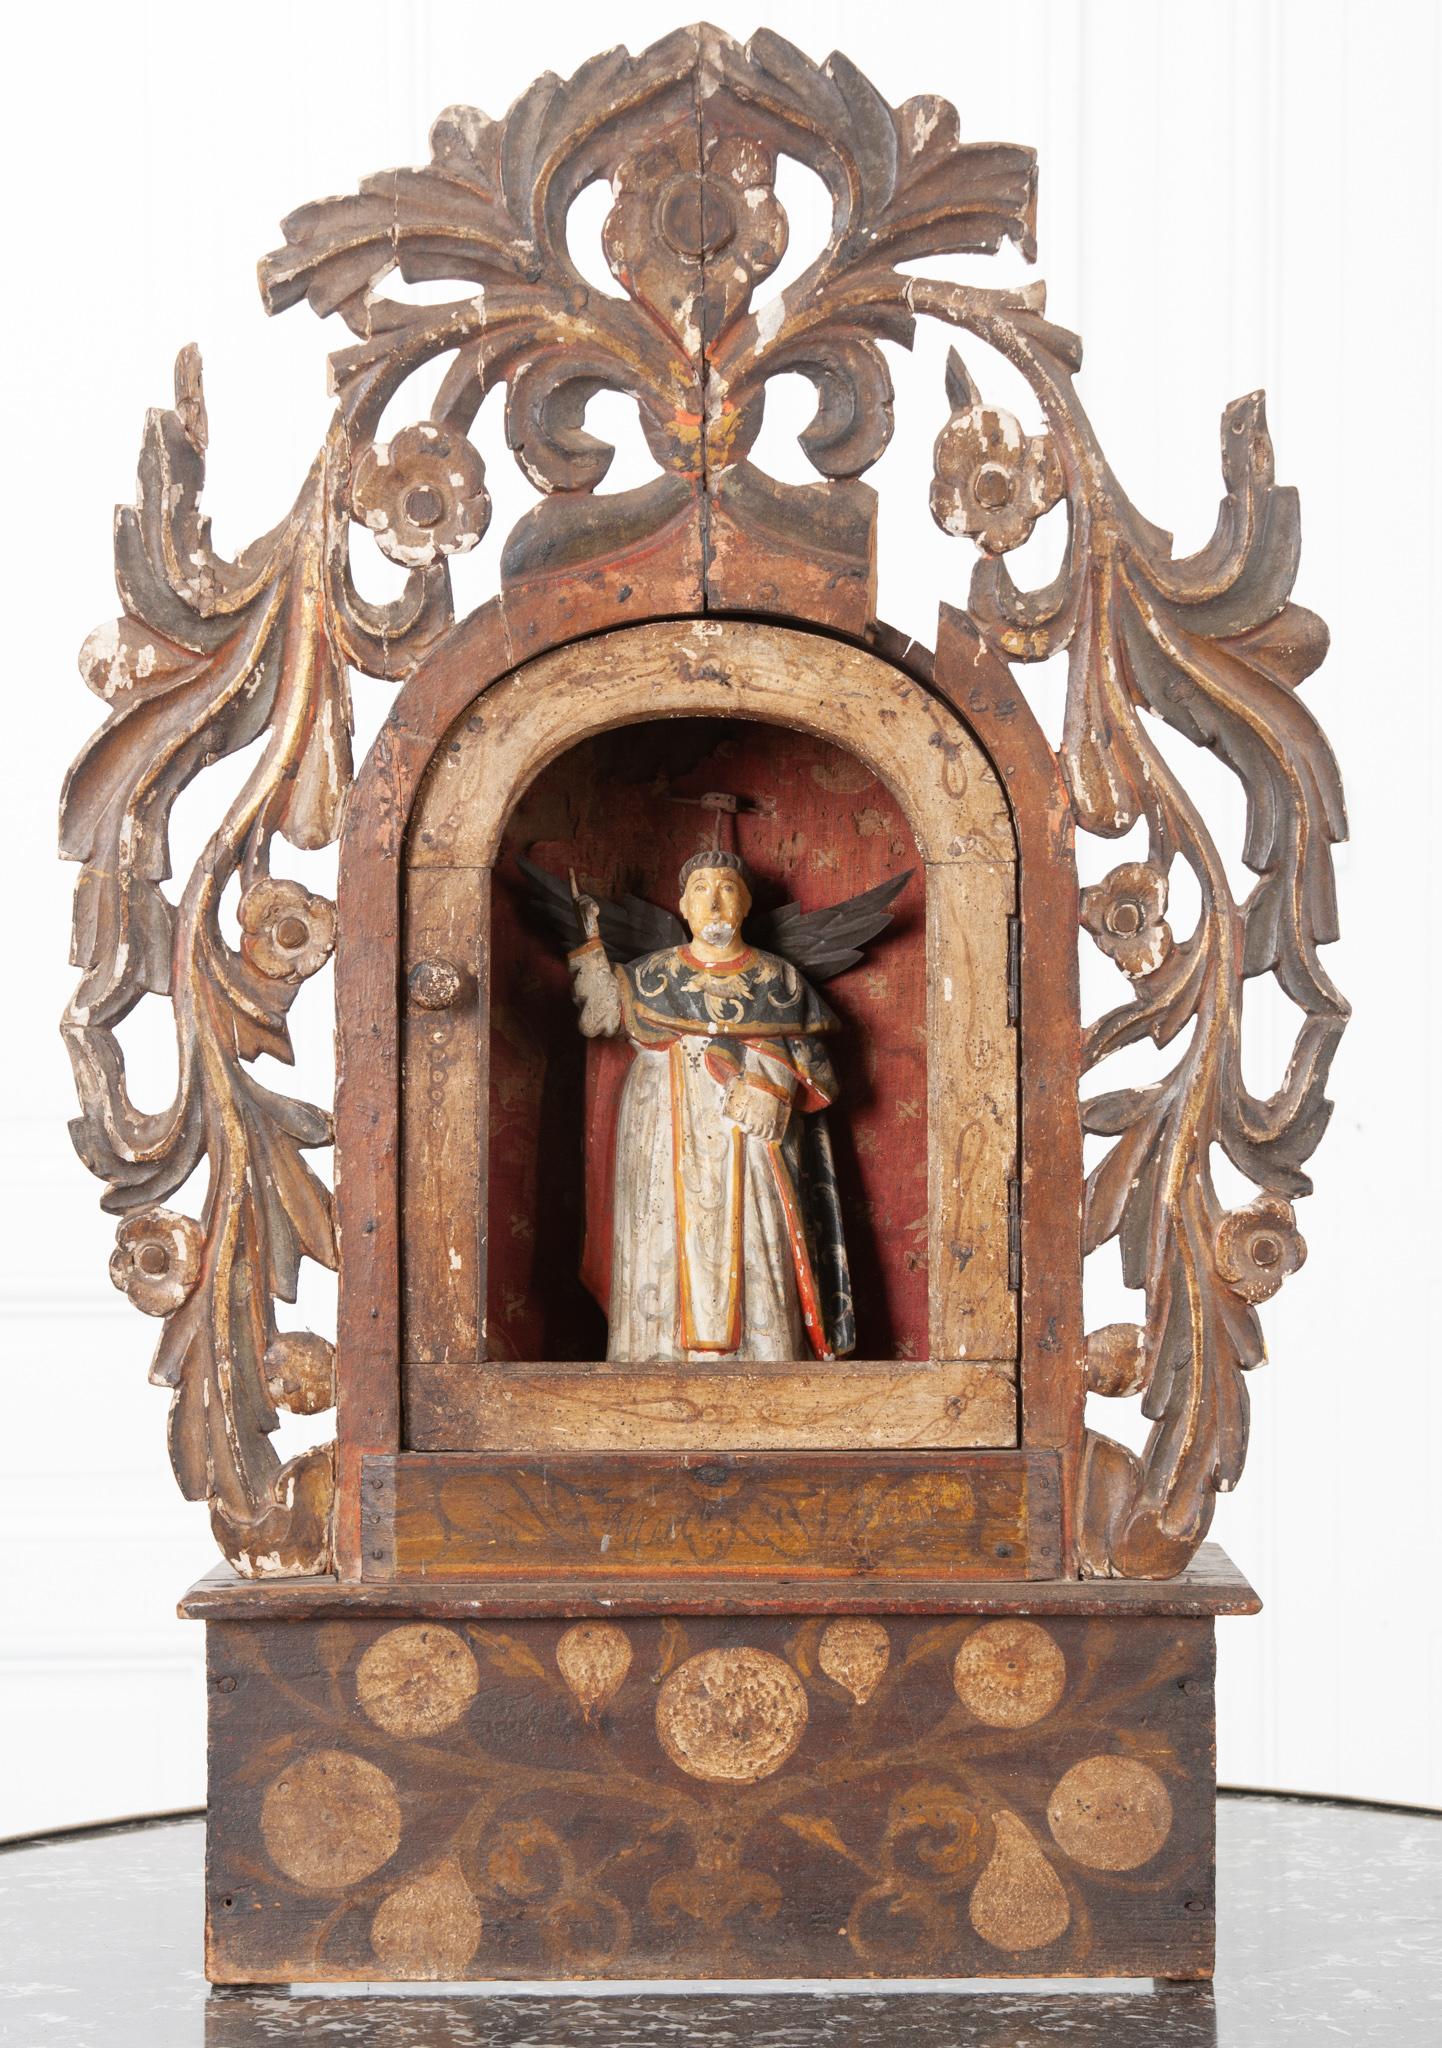 Dieser italienische Altar aus dem frühen 19. Jahrhundert ist aus abgenutztem, bemaltem Holz und abgenutzten Stoffdetails gefertigt. Es handelt sich um einen hochdekorativen Altar für den unbekannten katholischen Heiligen, der in der Mitte geschnitzt